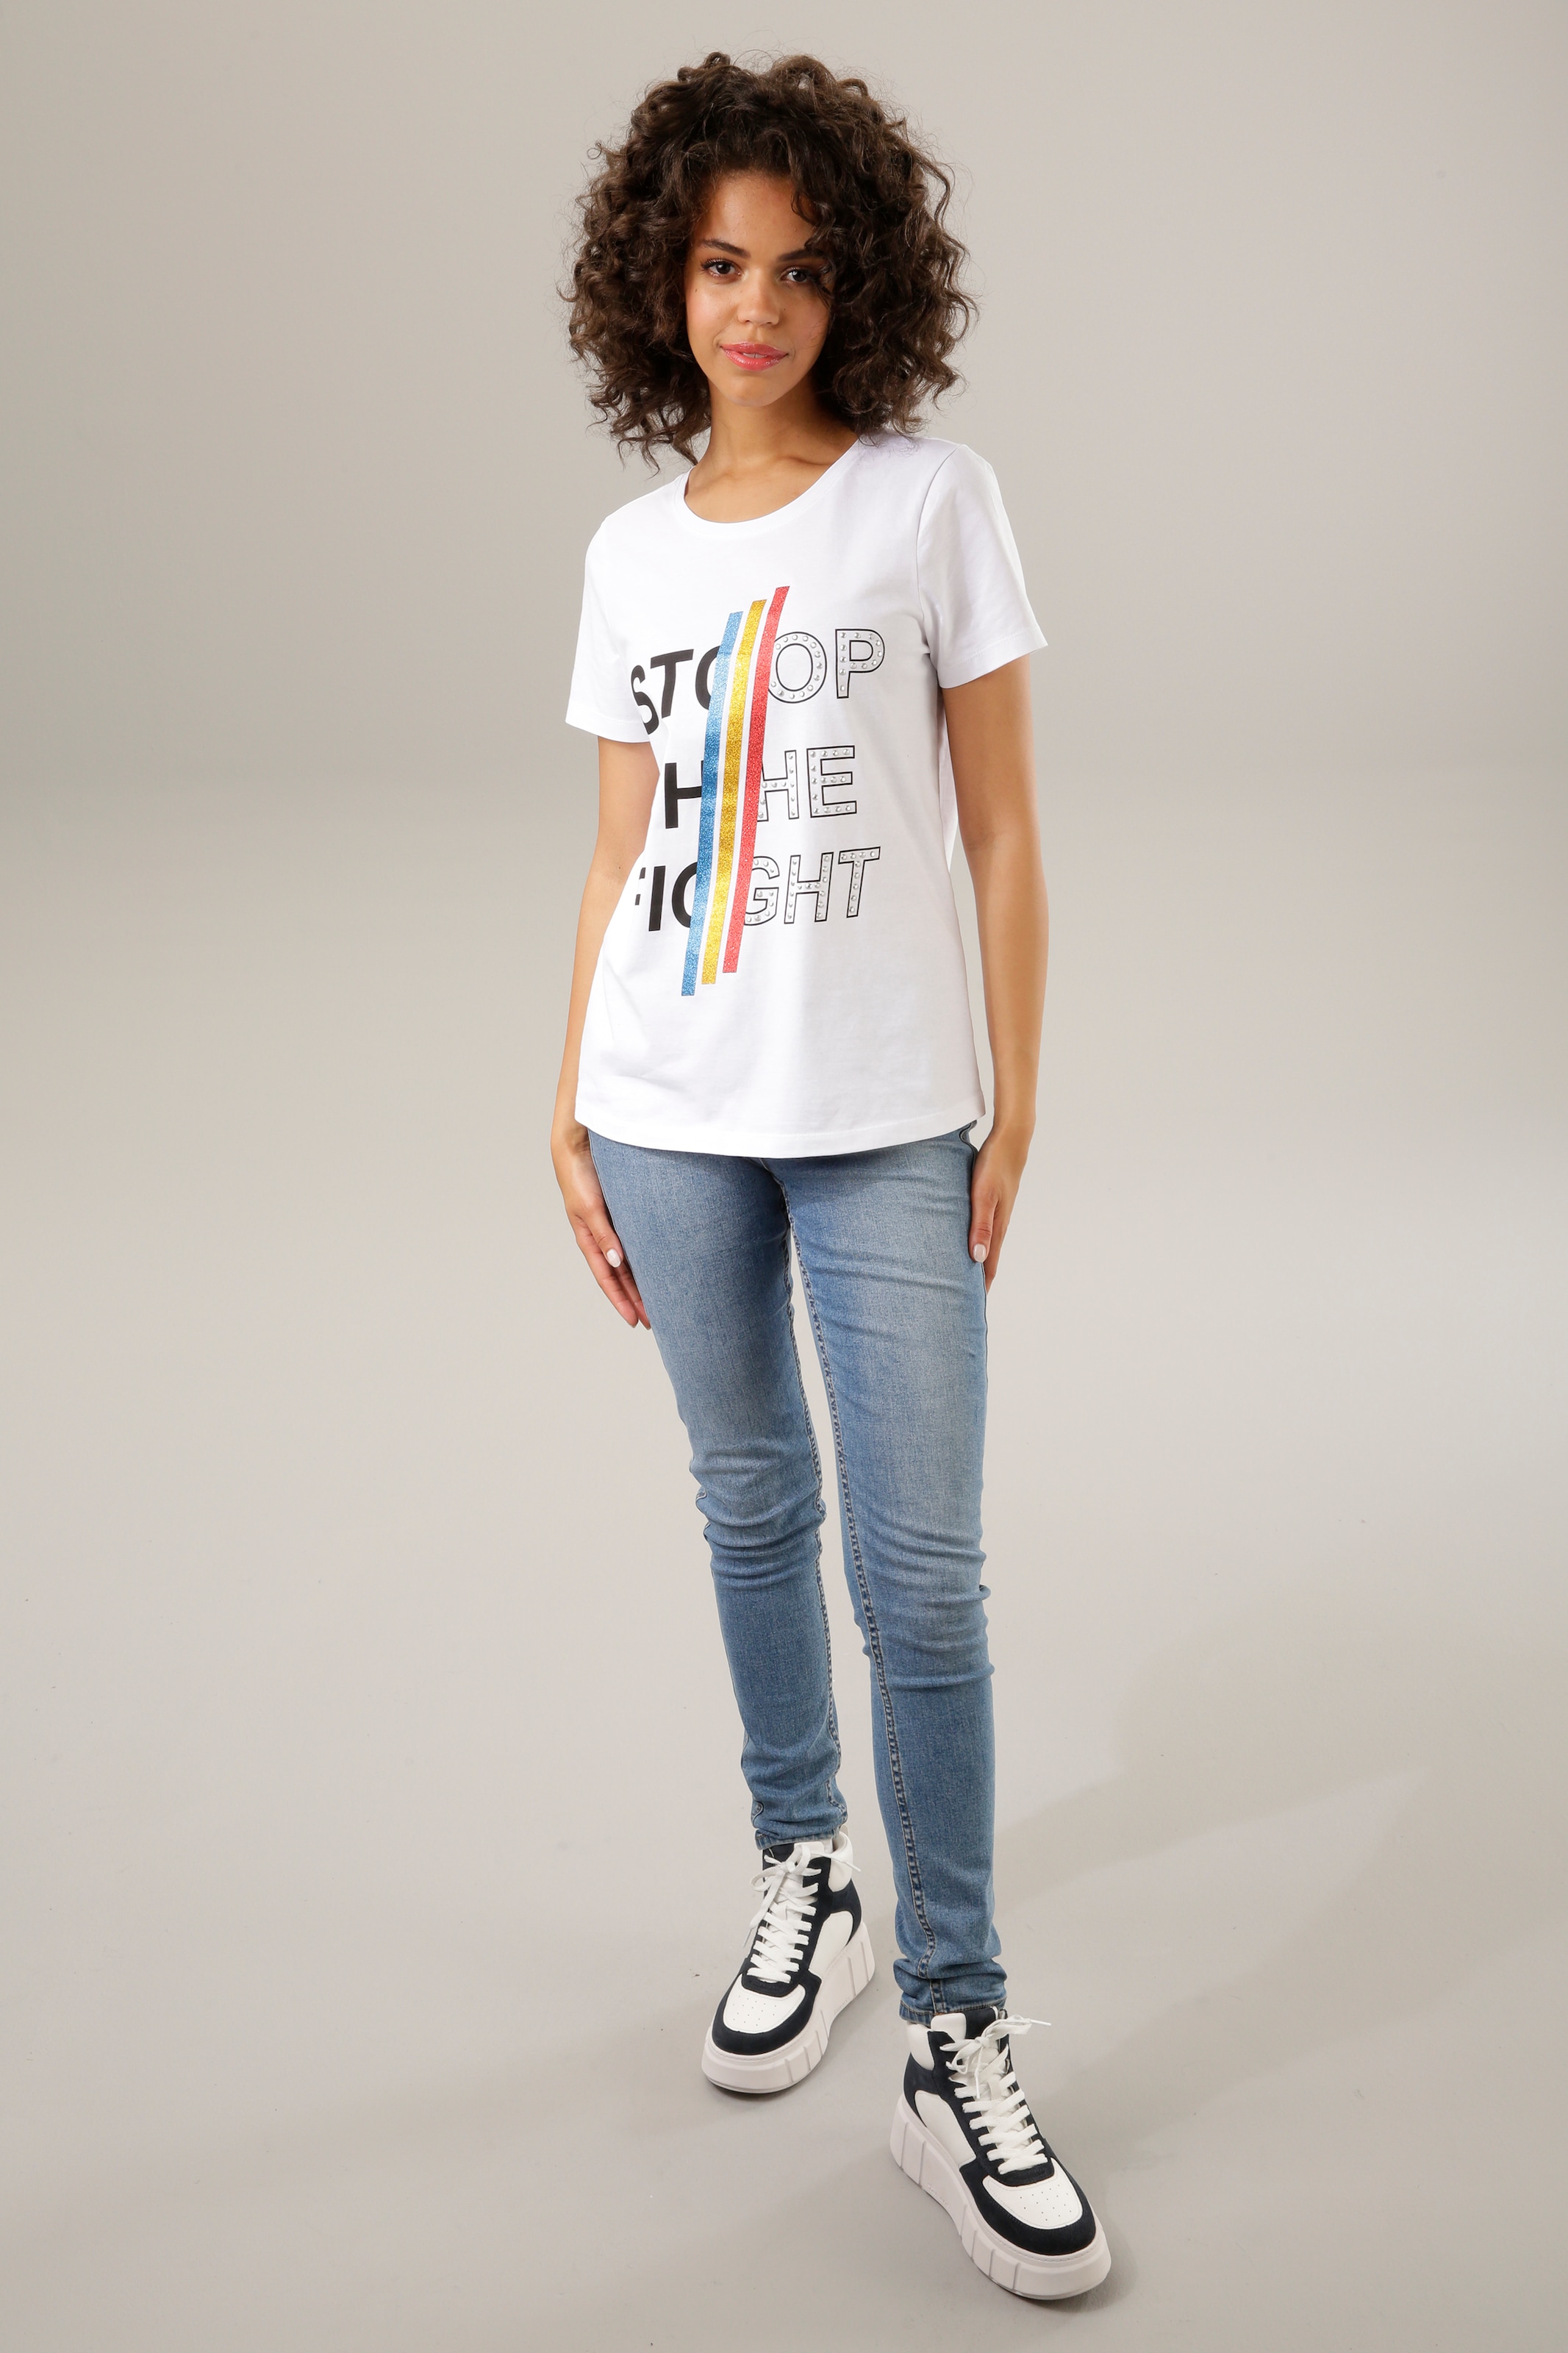 Aniston CASUAL Print-Shirt, mit bunten Schriftzug shoppen Nieten und Glitzerstreifen